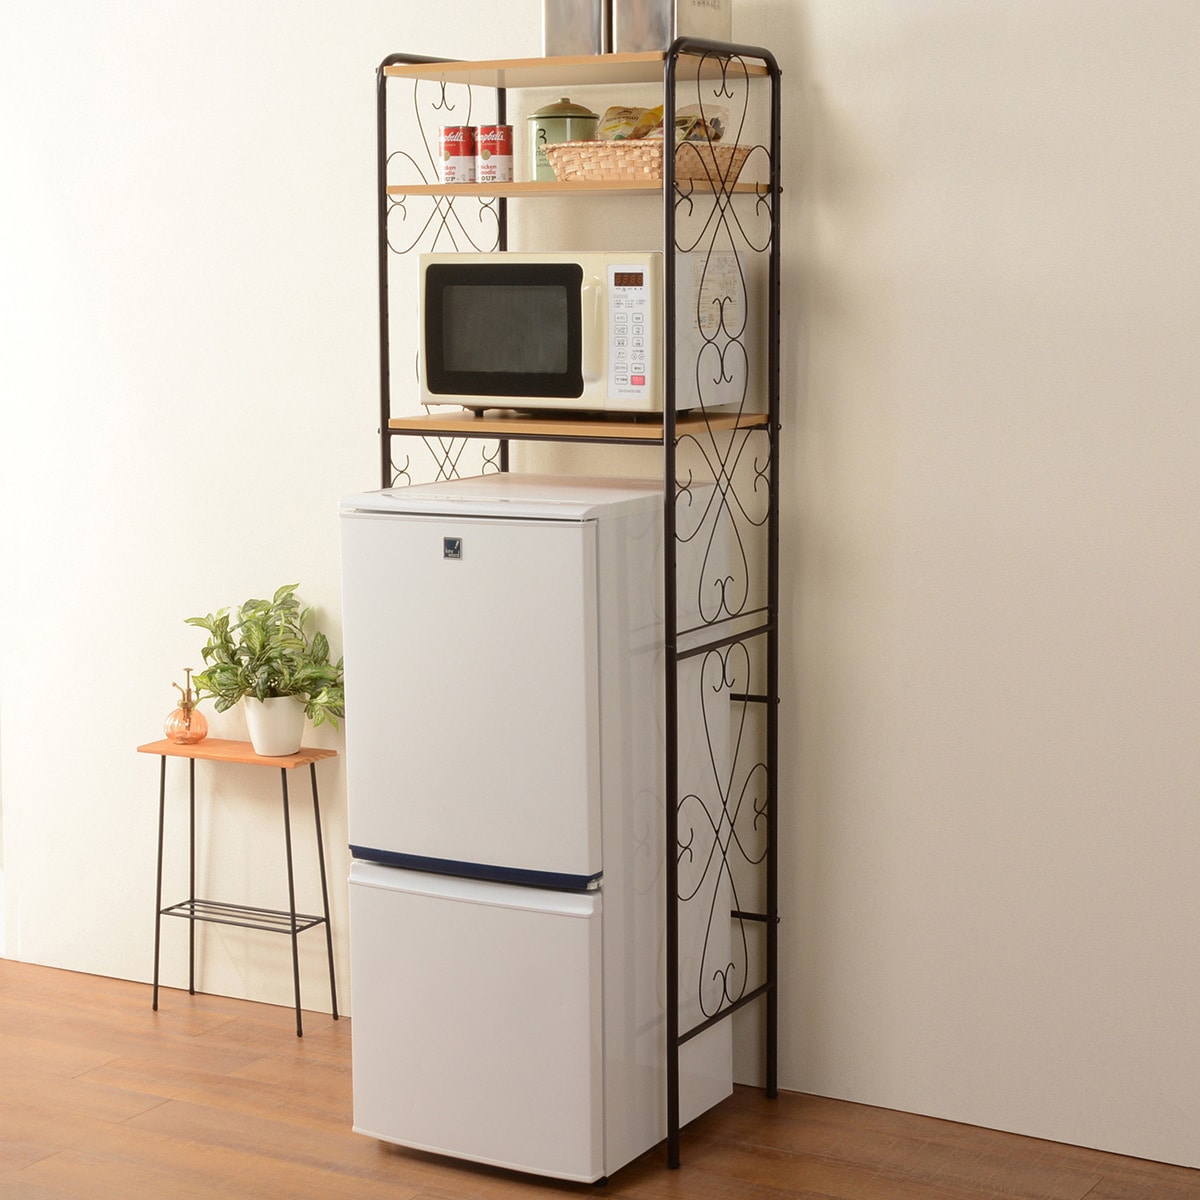 ニトリのアンティークな雰囲気のな冷蔵庫ラック 小型冷蔵庫上のデッドスペースを有効活用（ブラウン)  【・メーカー直送品】 【1年保証】 【期間限定価格：1/1〜2/2まで】(リビング収納)